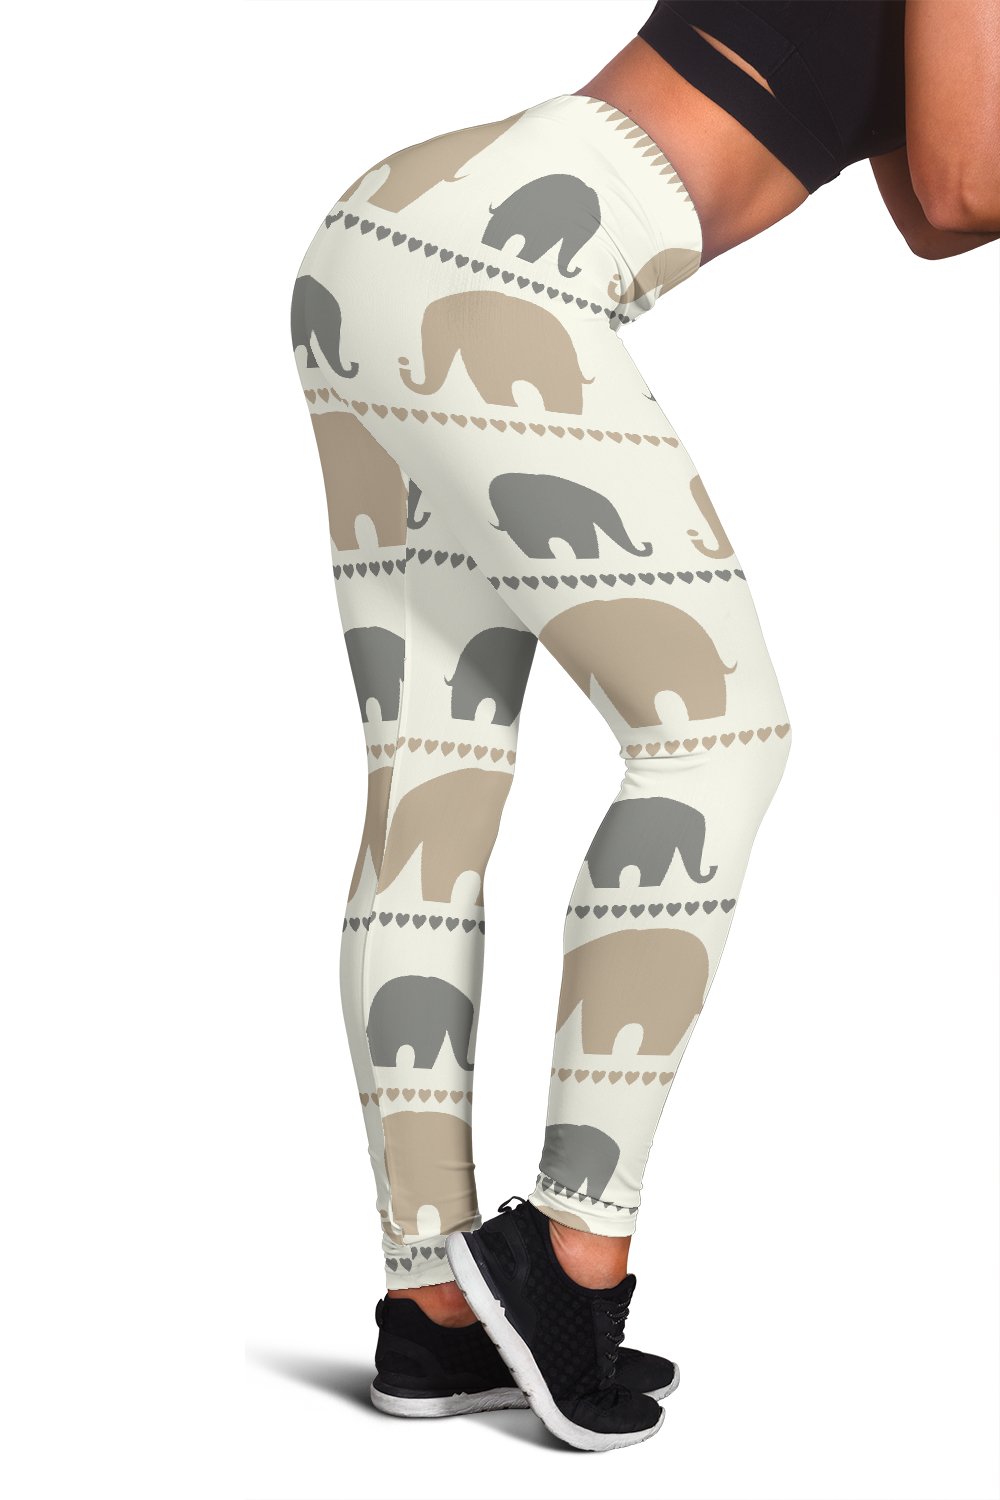 Elephant Cute Women Leggings